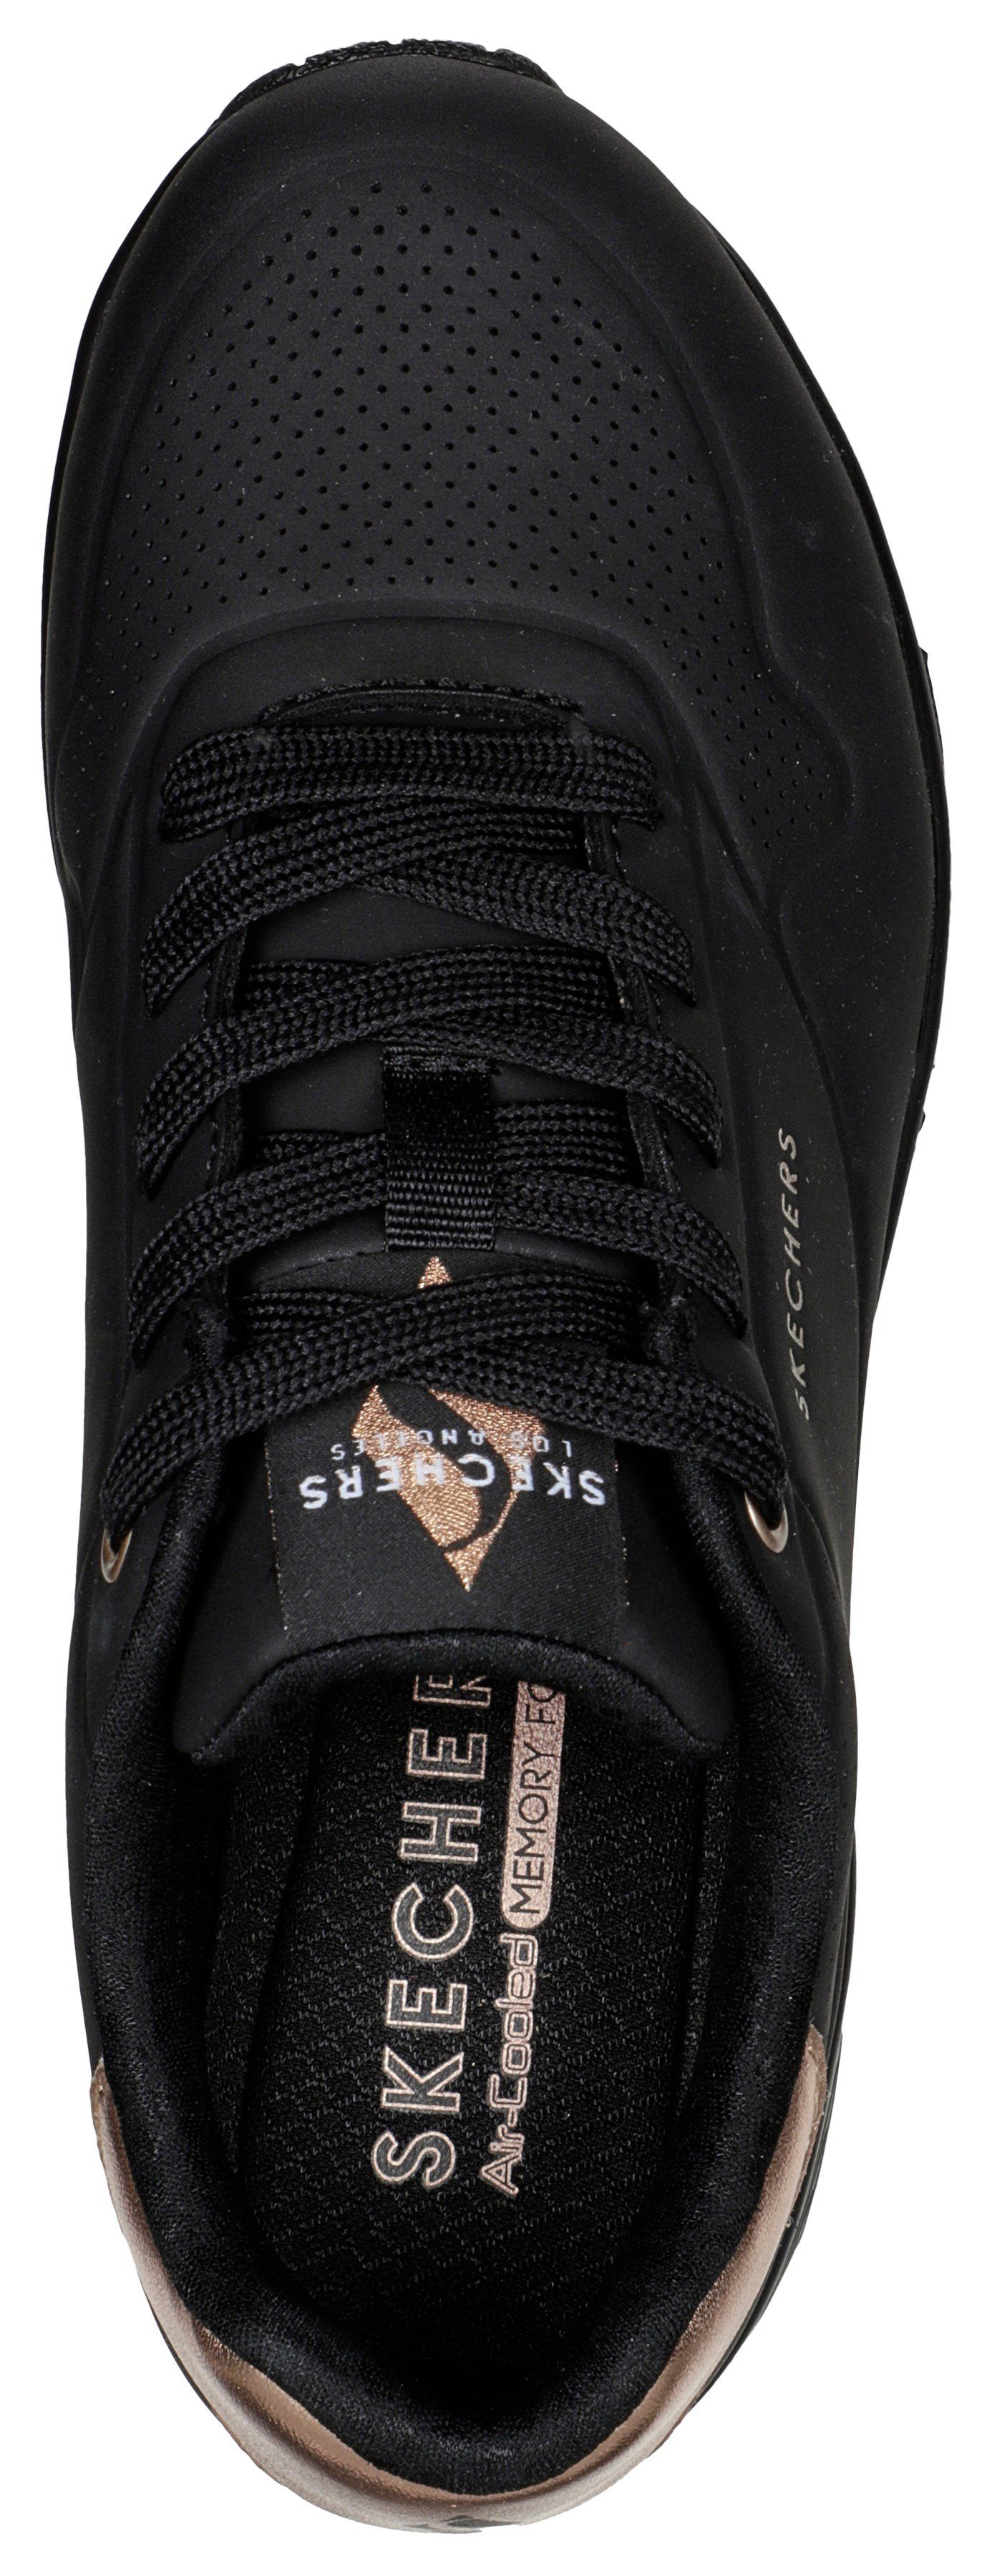 Skechers mit UNO Sneaker schwarz Metallic-Einsatz